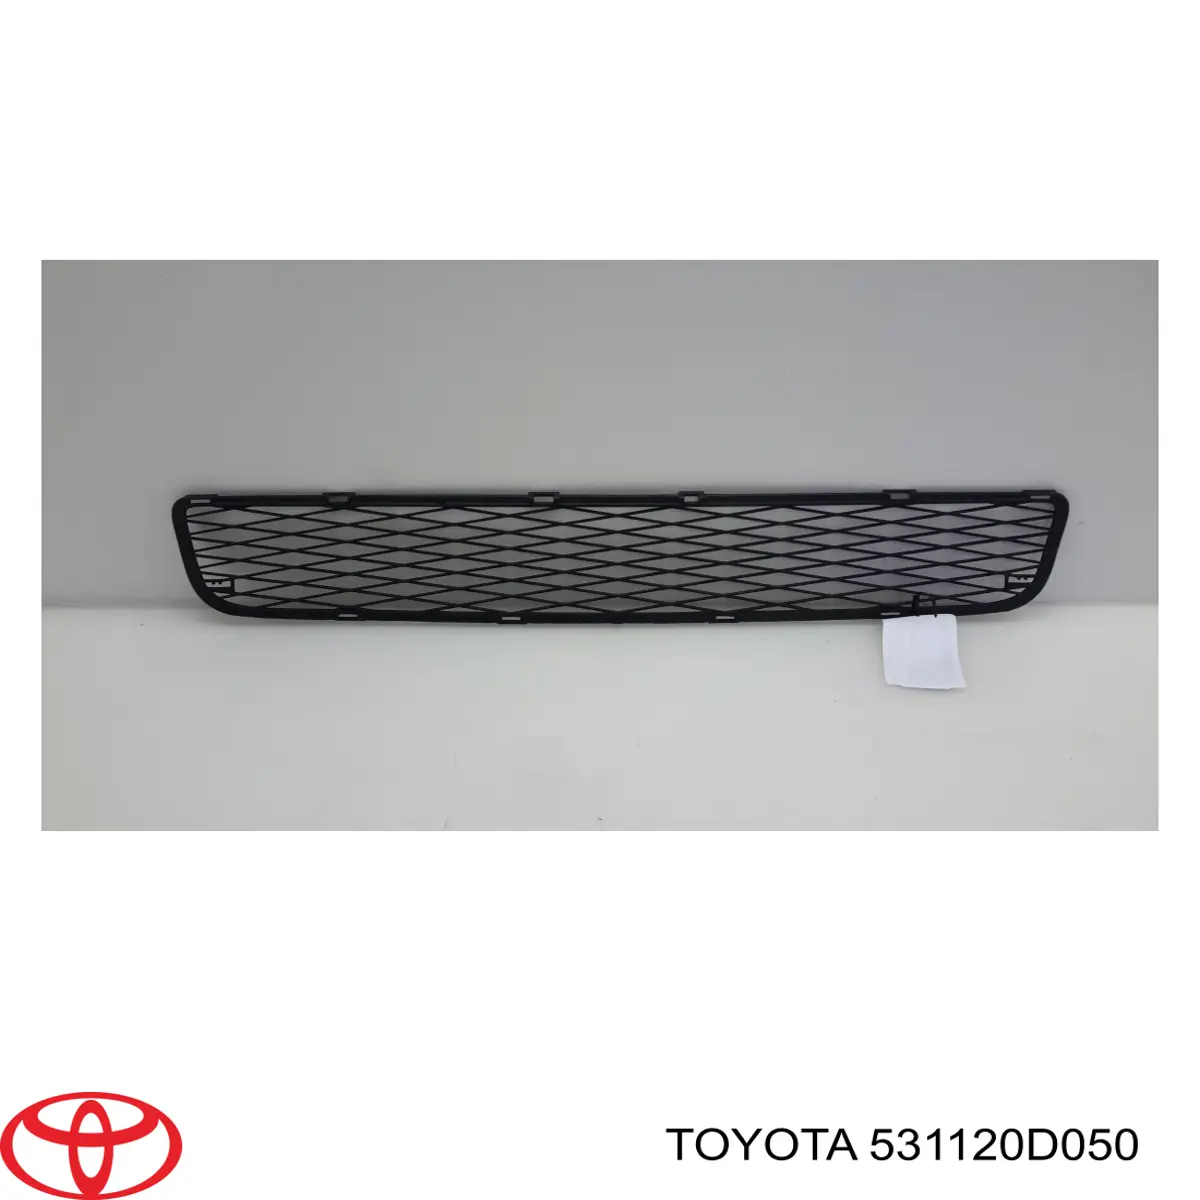 Rejilla de ventilación, parachoques delantero, central para Toyota Yaris 